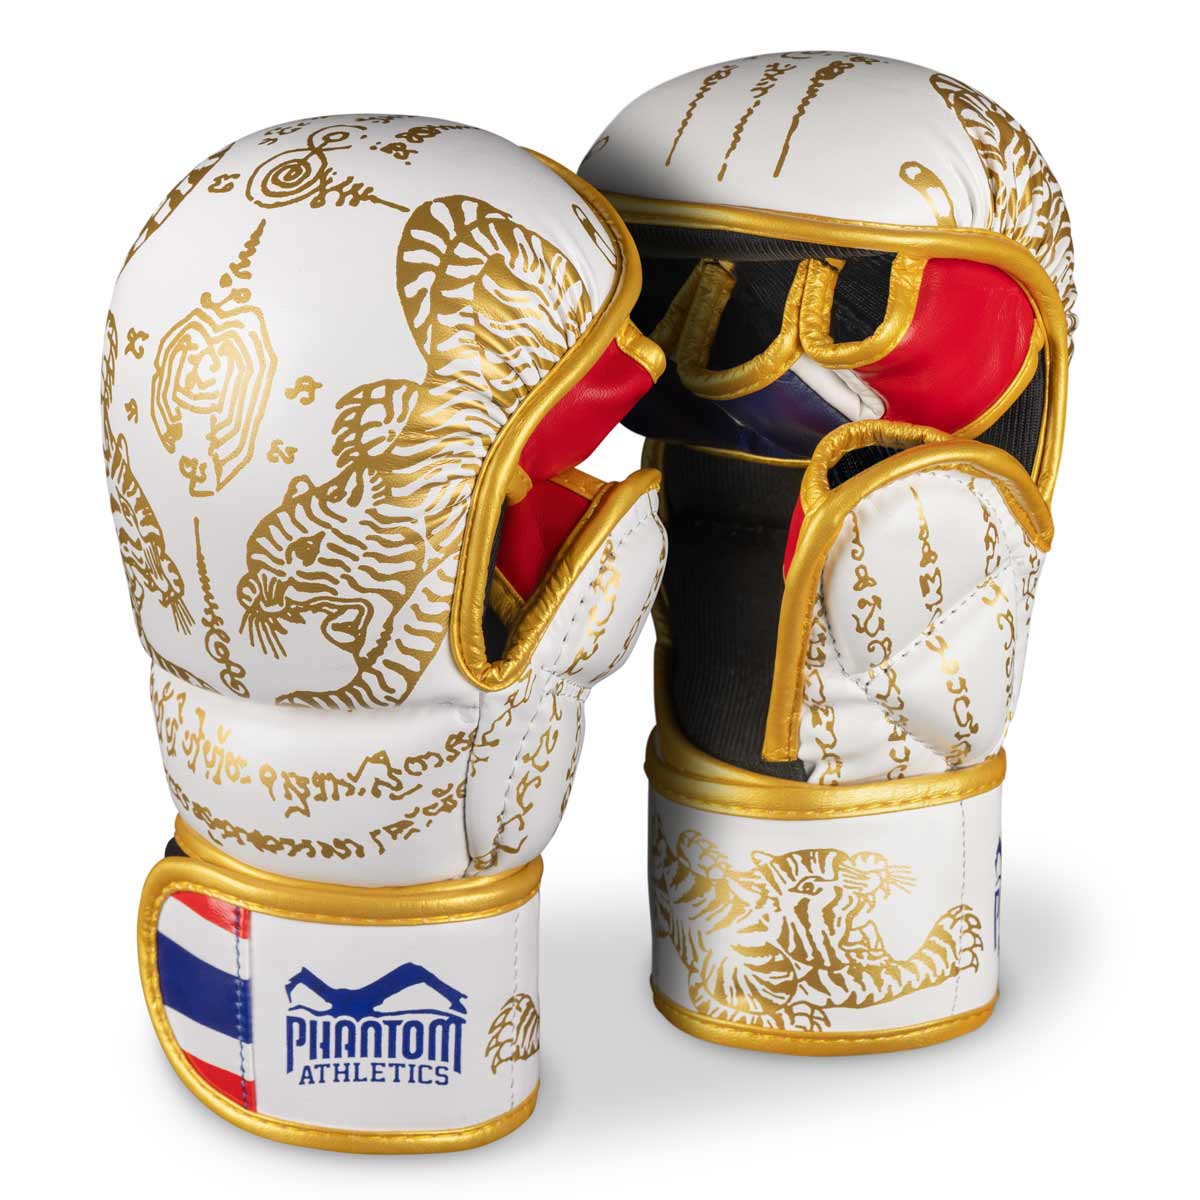 Ръкавици Phantom Muay Thai за спаринг, състезания и тренировки по тай бокс и MMA. В традиционния дизайн на Sak Yant и цвят бяло/златисто.